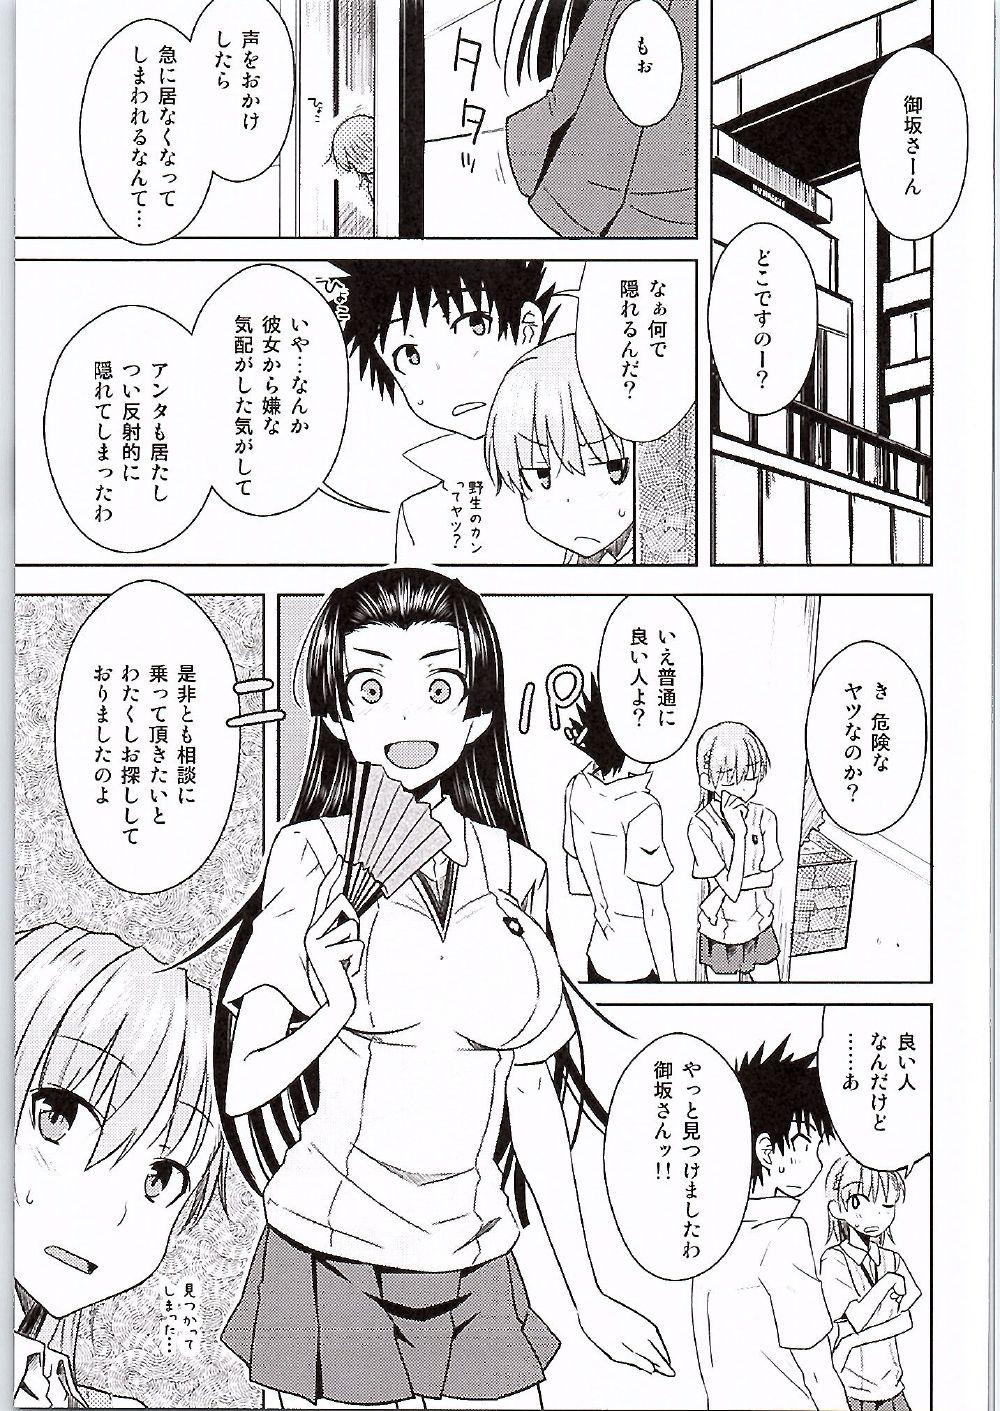 Bulge BEAUTIFUL SHINE - Toaru kagaku no railgun One - Page 4